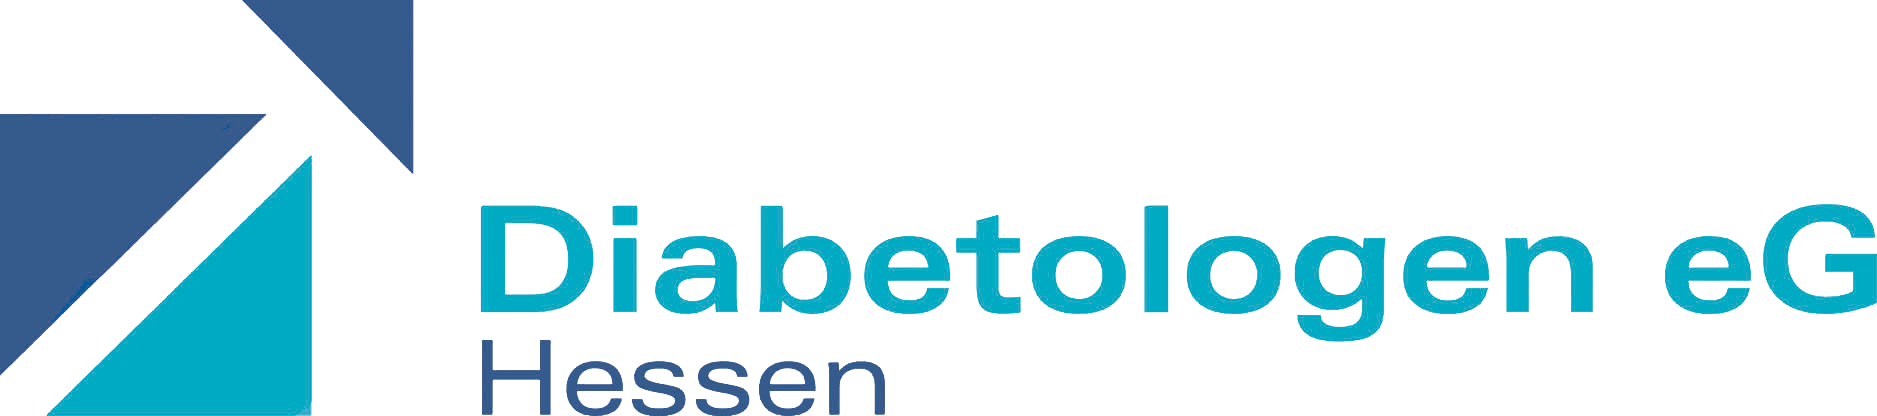 tour-diab-hessen-logo